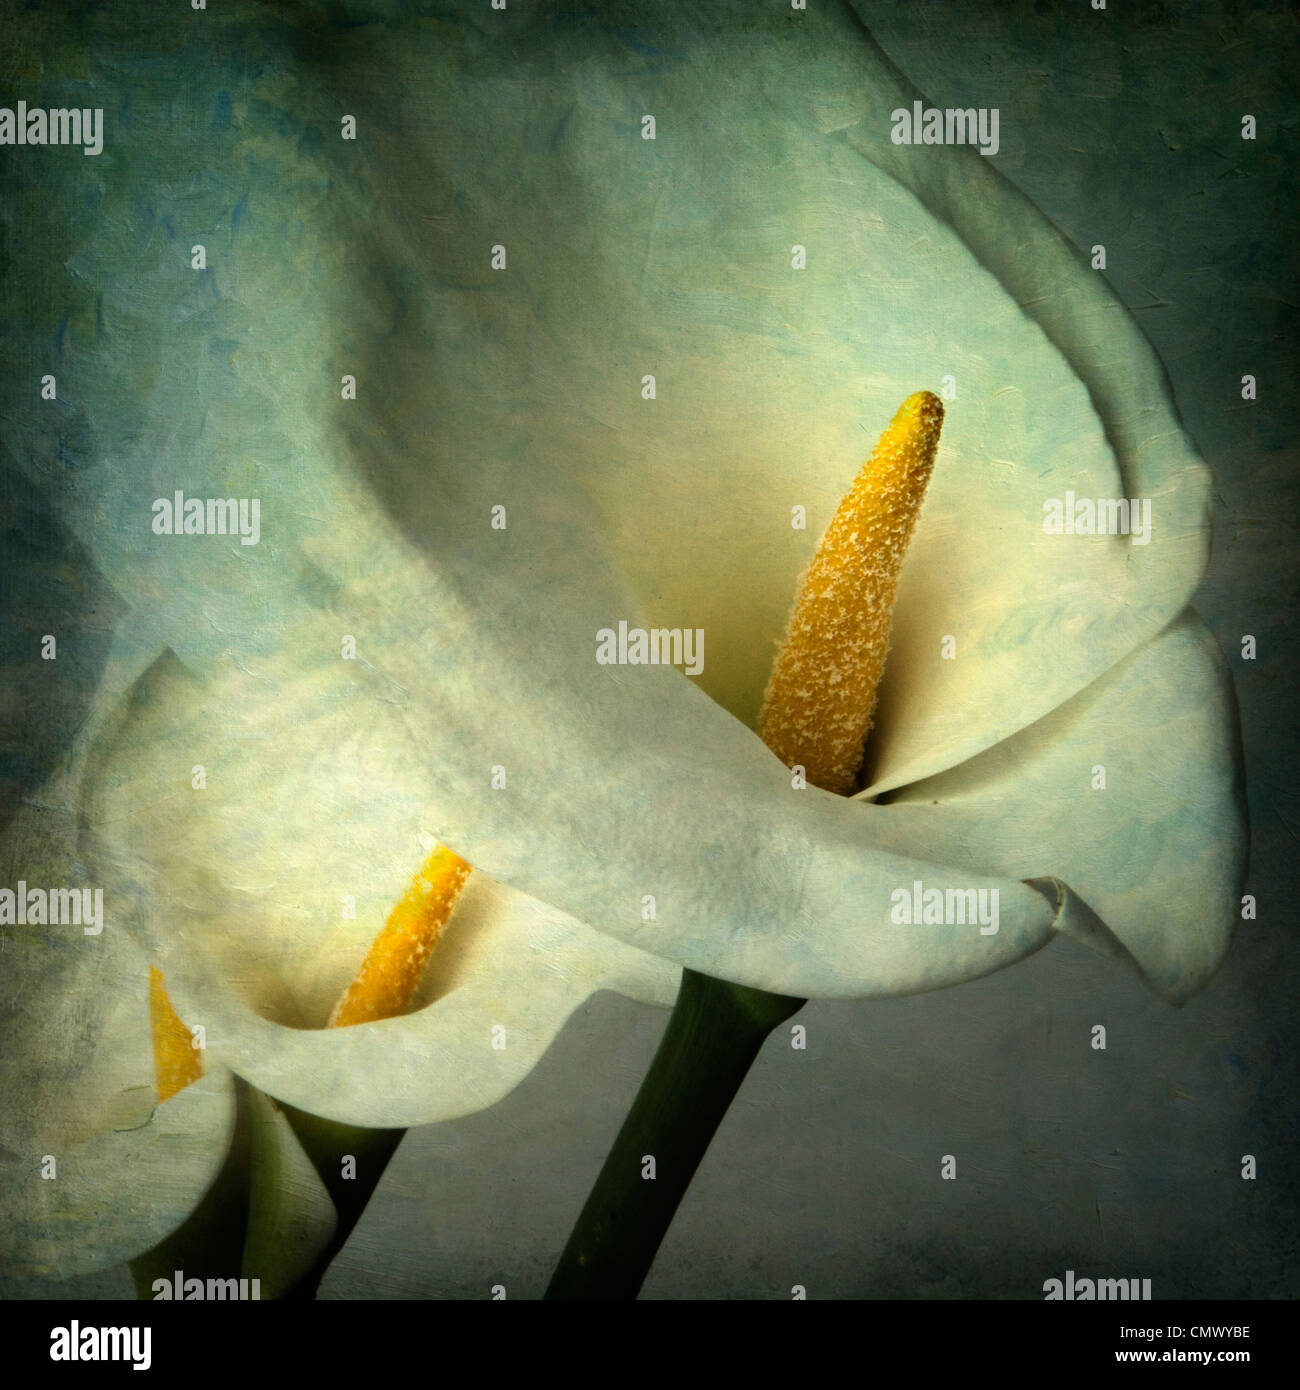 Arum lily fiori, vintage-look - arte testurizzata immagine effetto Foto Stock